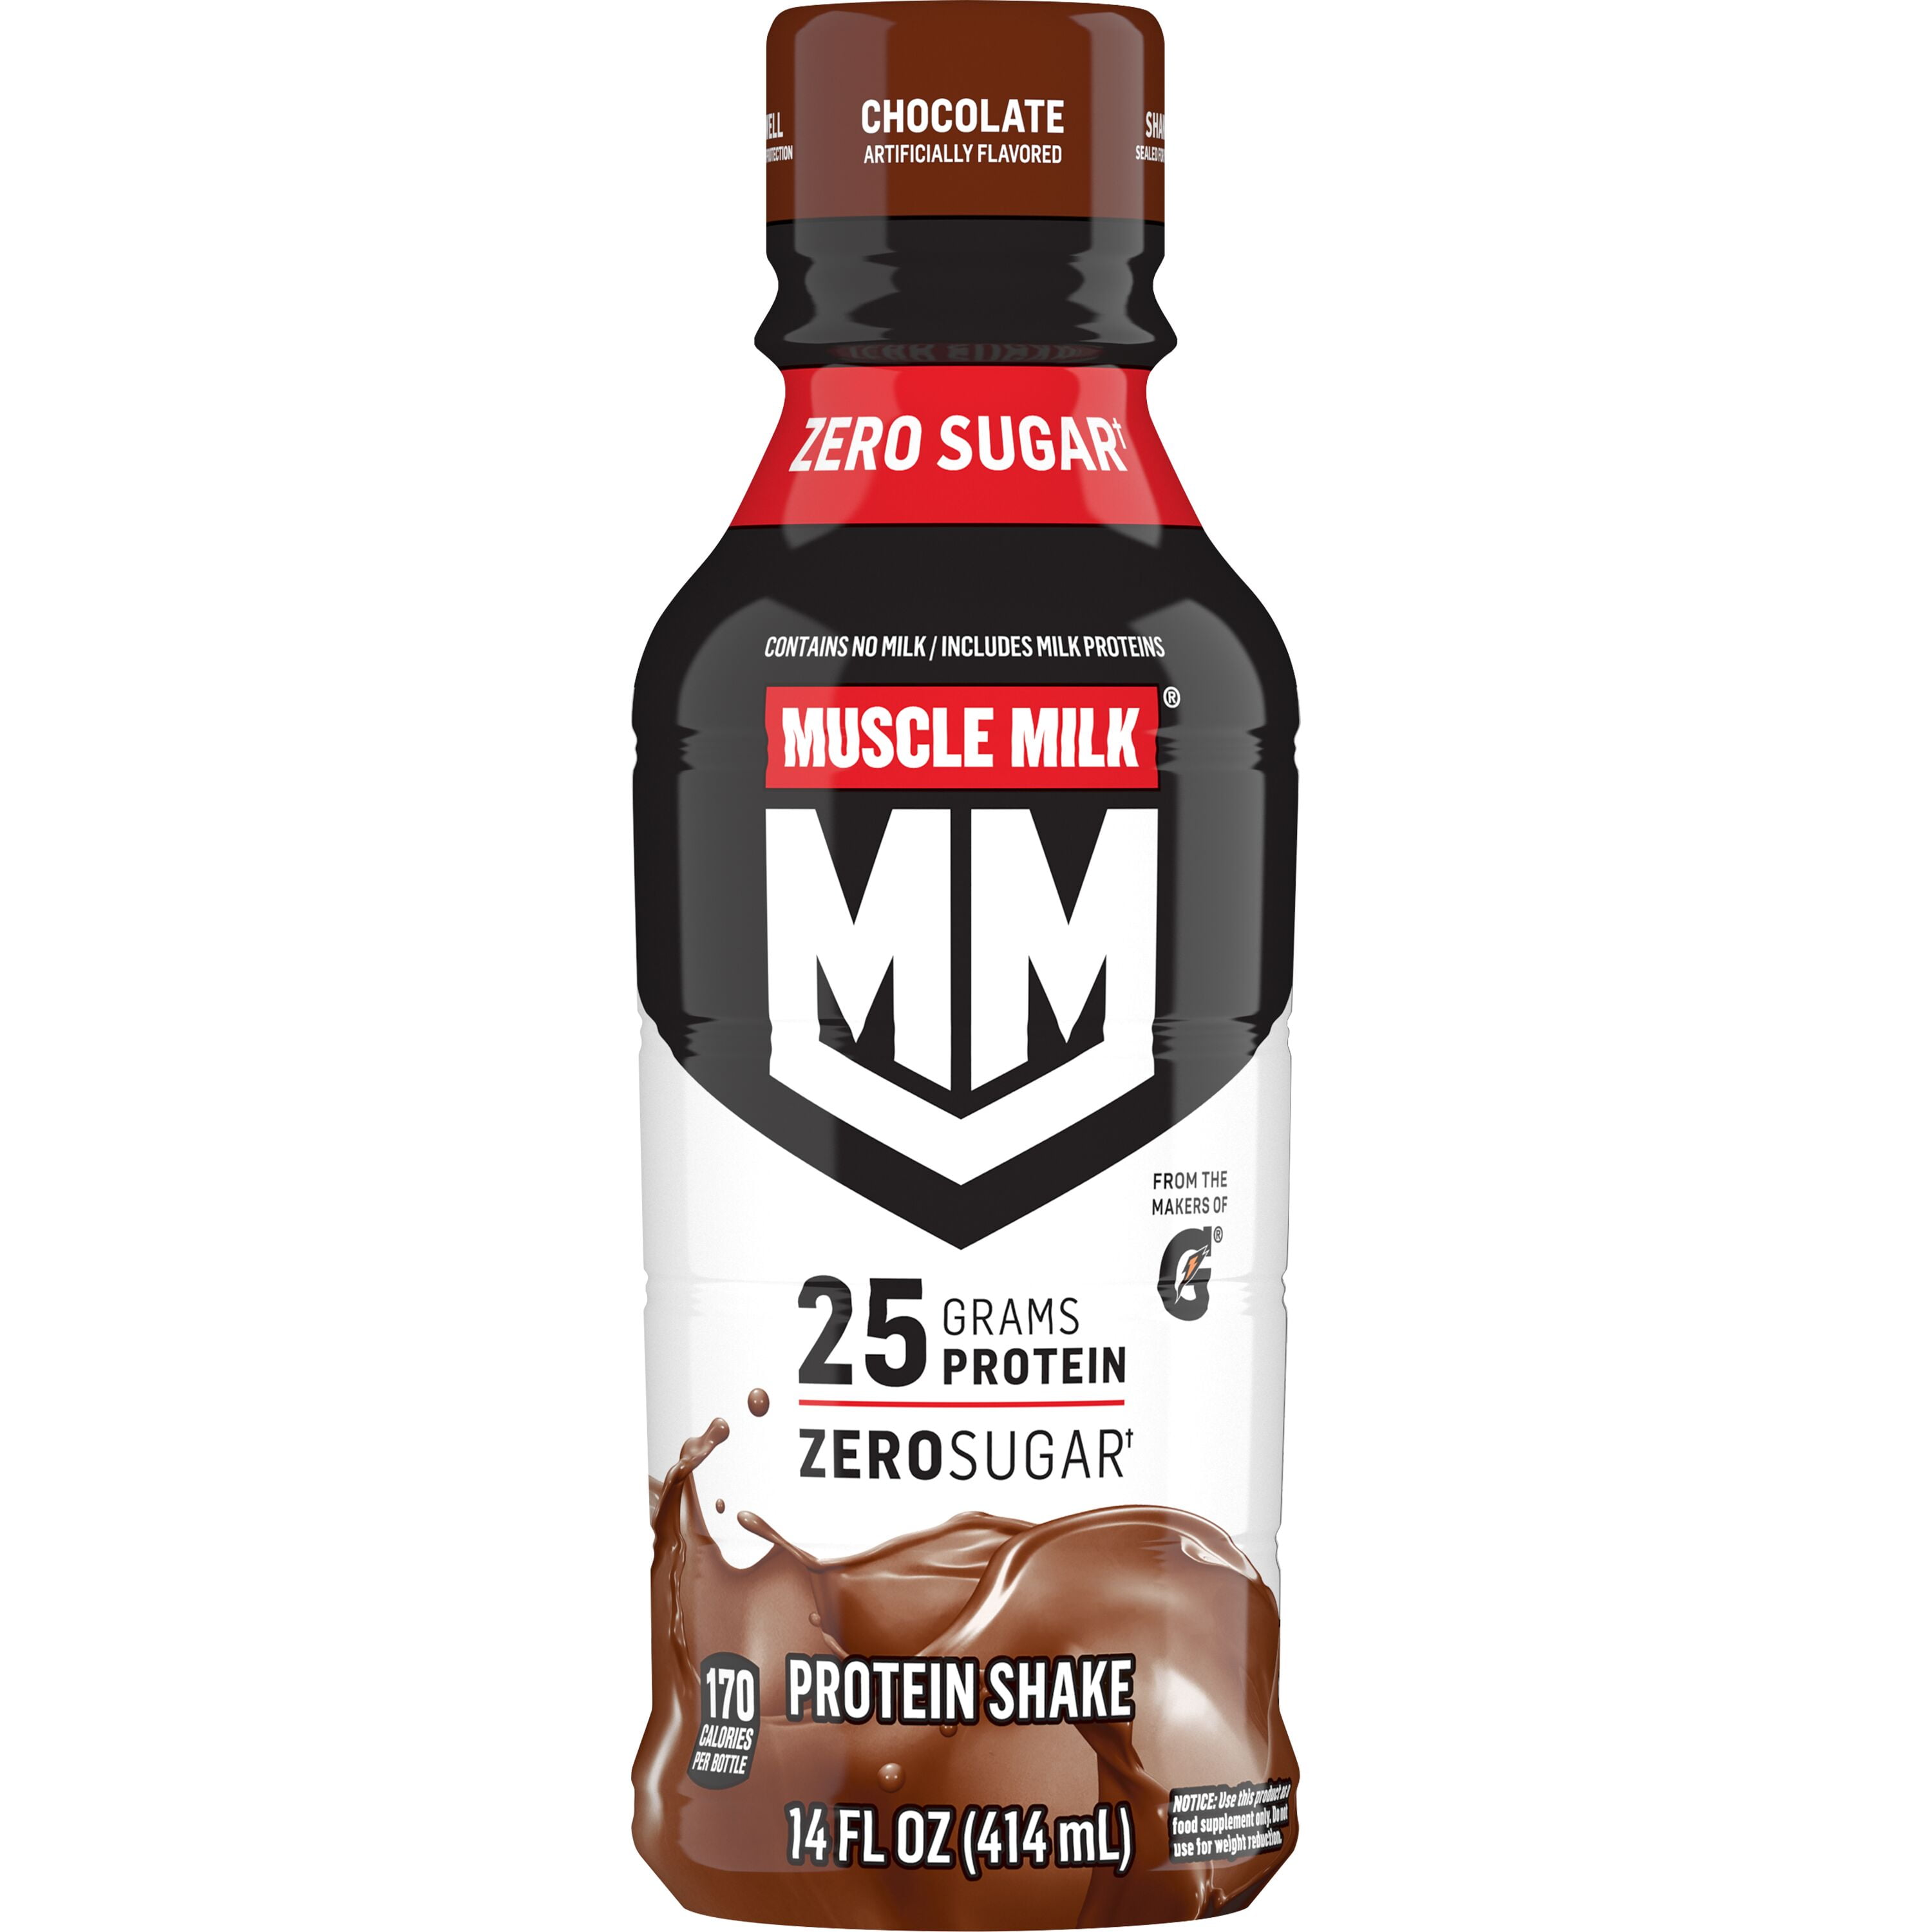 Muscle Milk Genuine Protein Shake, Chocolate, 14 fl oz Bottle, 25g Protein  